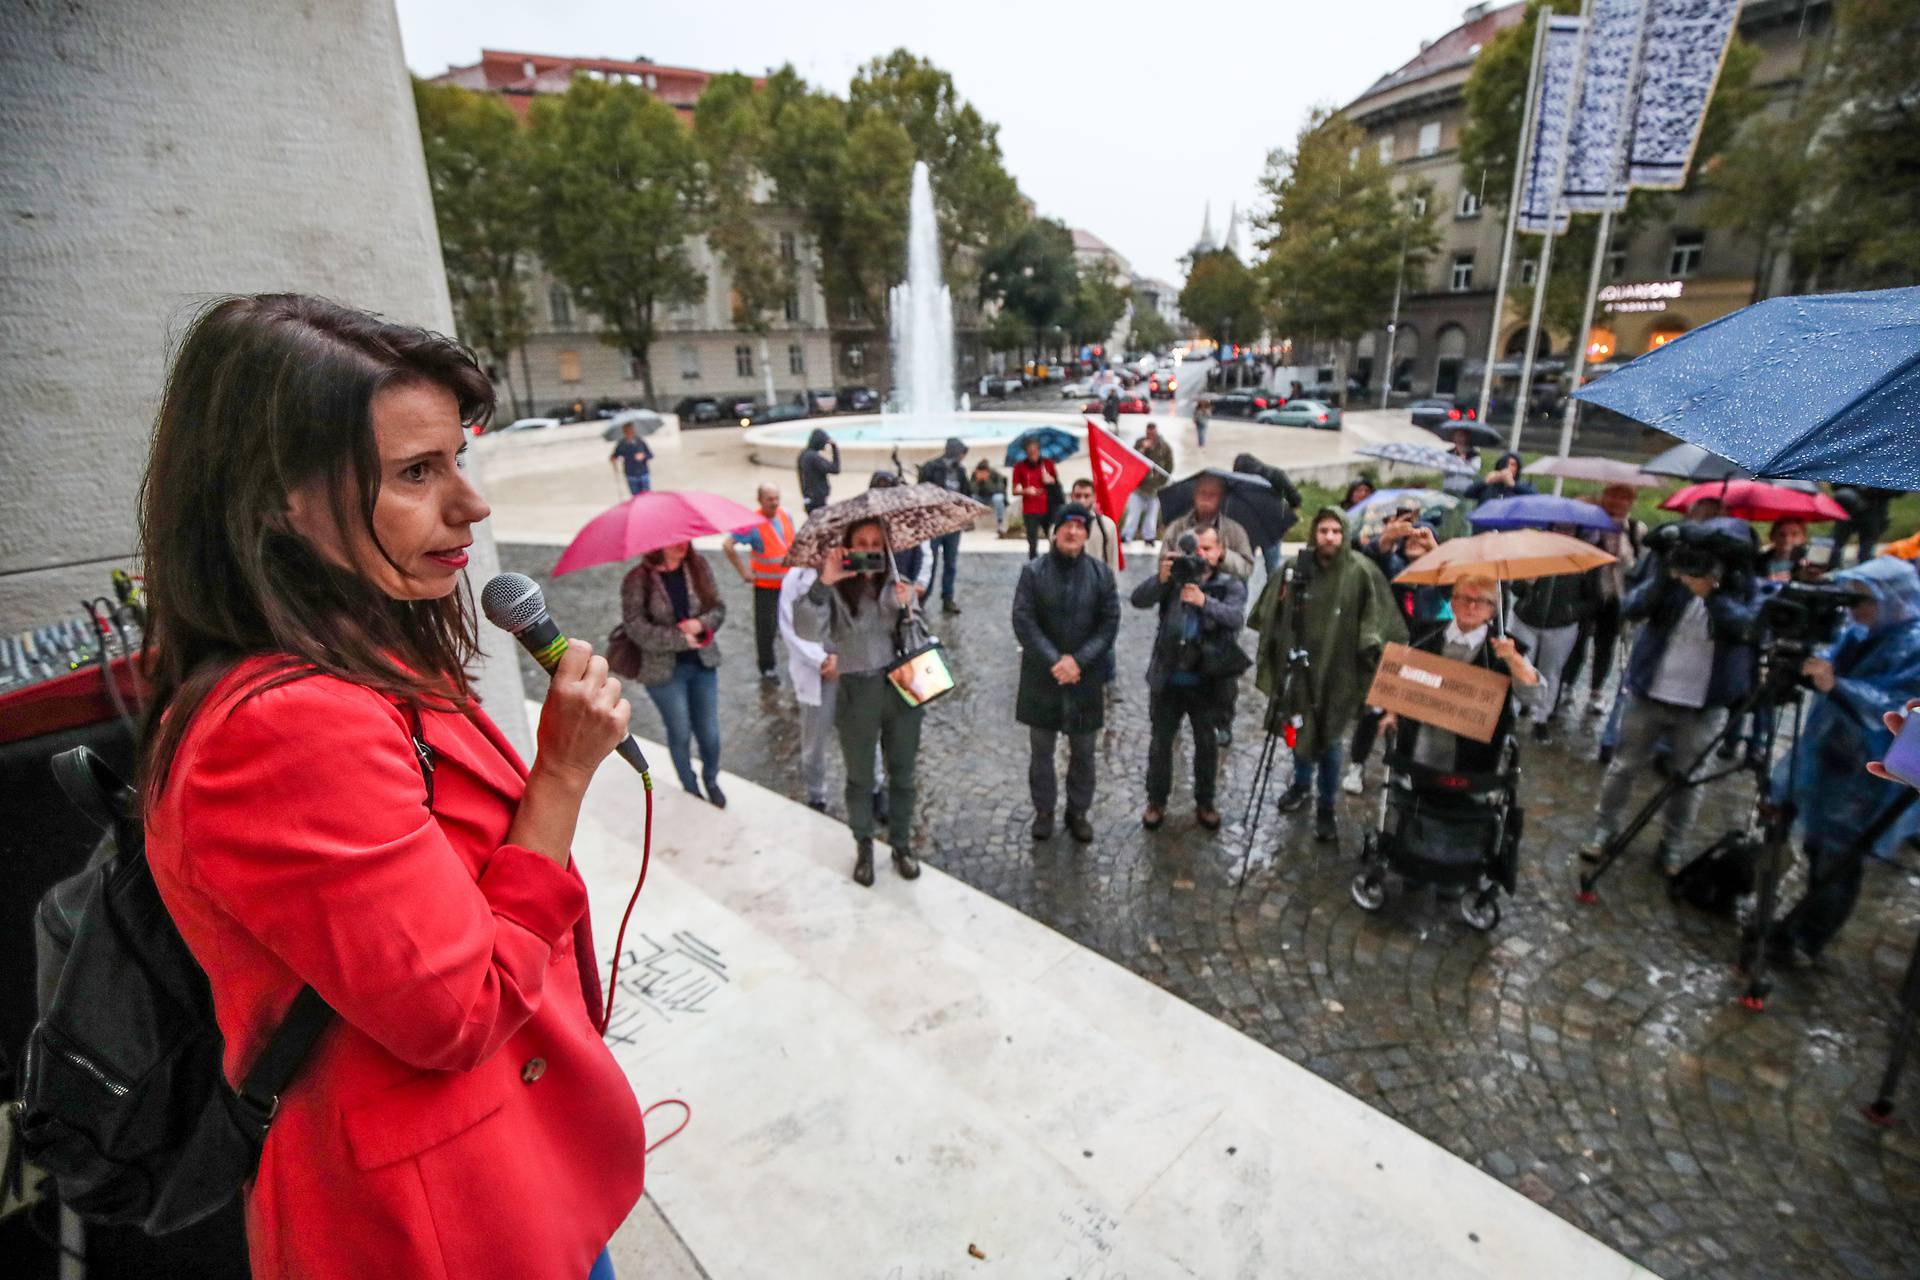 Zagreb: Prosvjedno okupljanje na Trgu žrtava fašizma pod nazivom "Za budućnost bez HDZ-a"